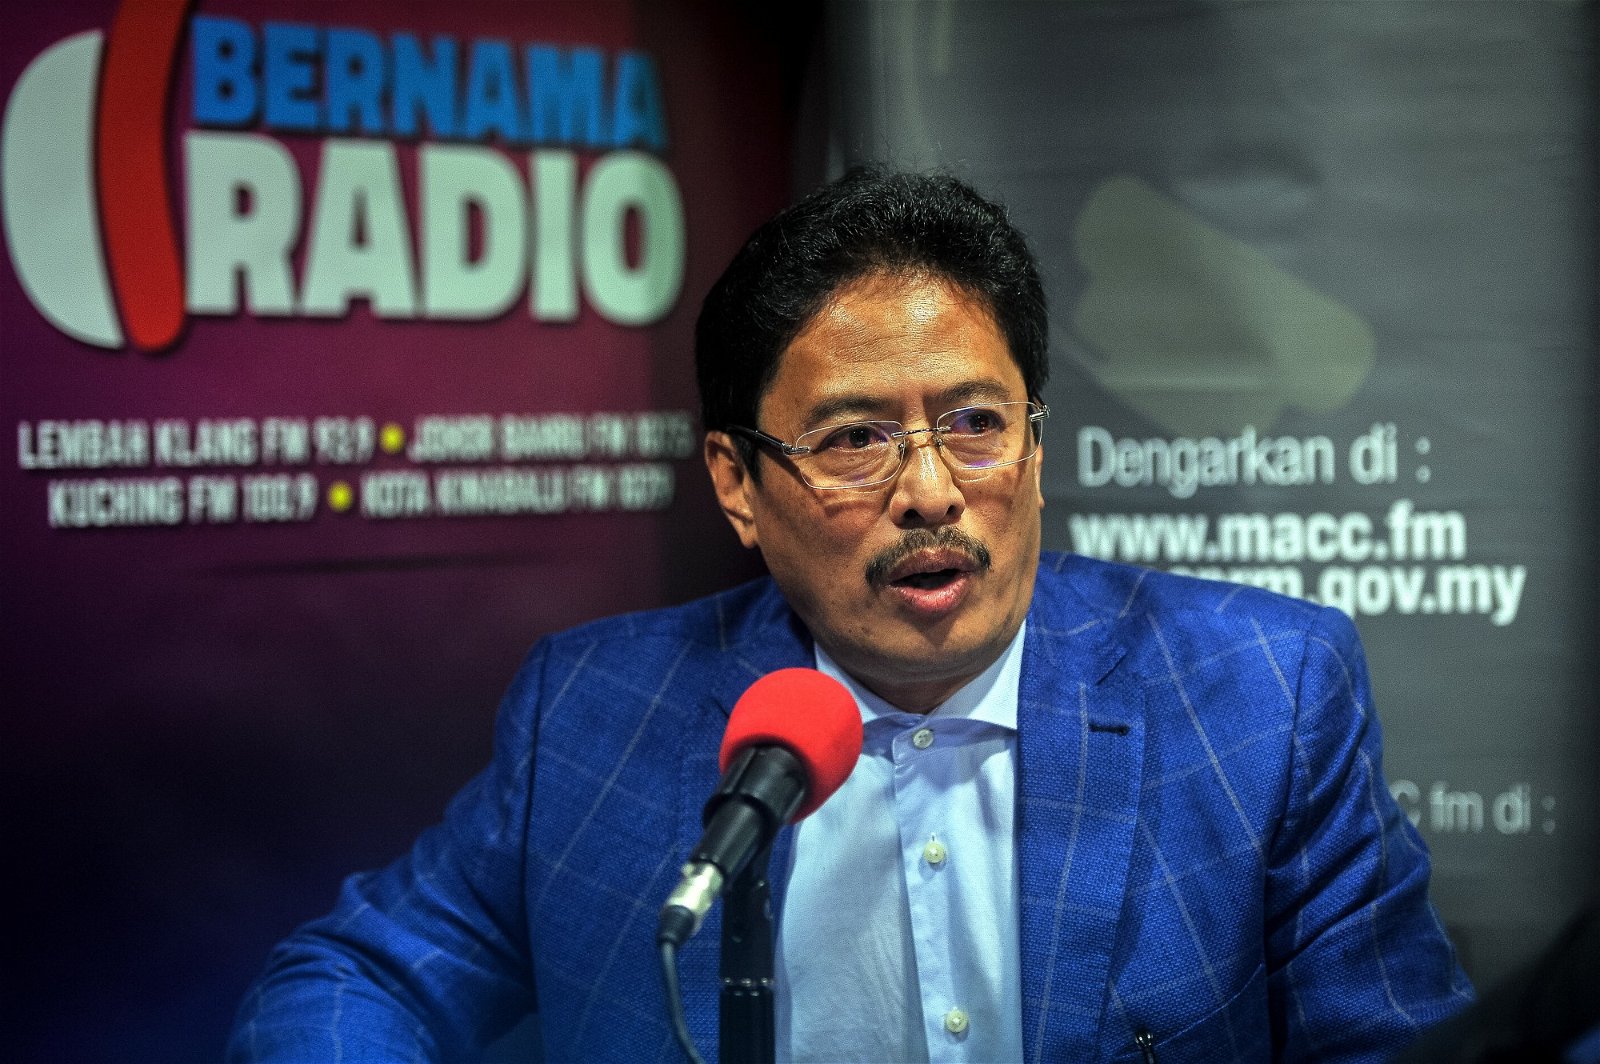 阿占峇基接受《马新社电台》访问。